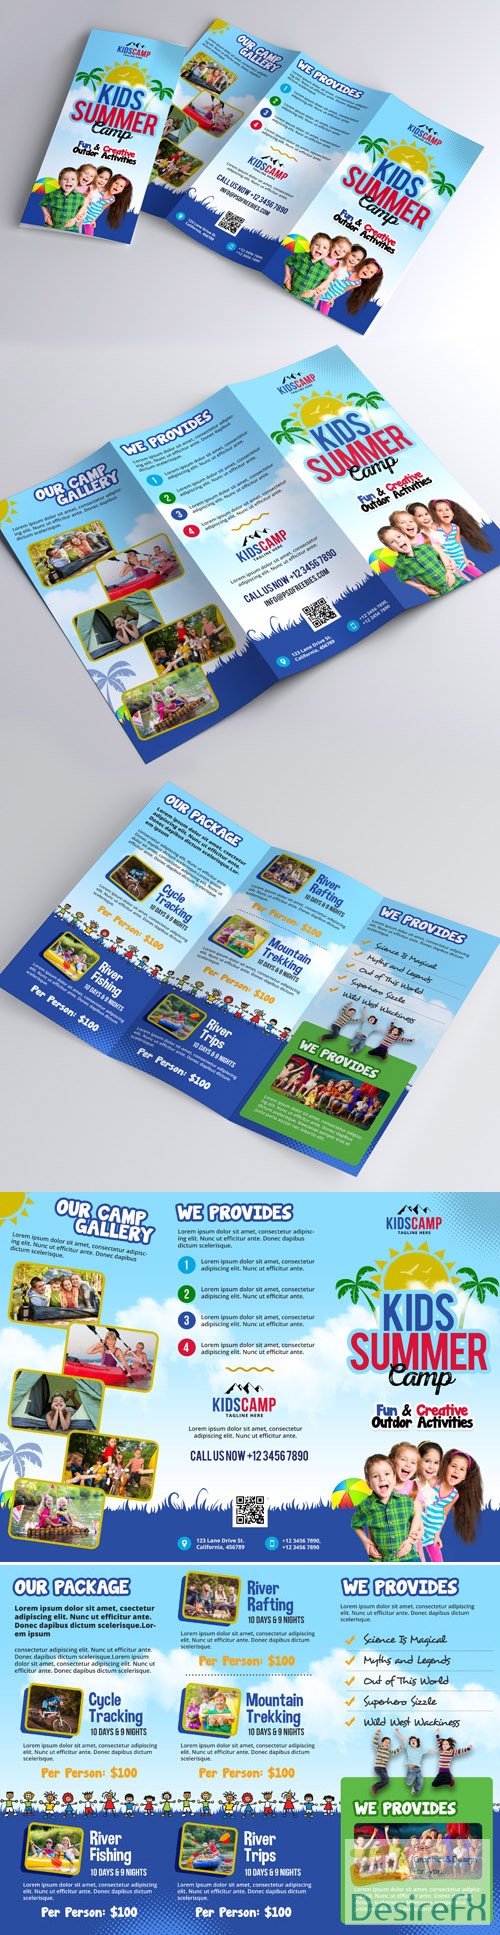 Kids Camp - Summer Trifold Brochure Design PSD Template